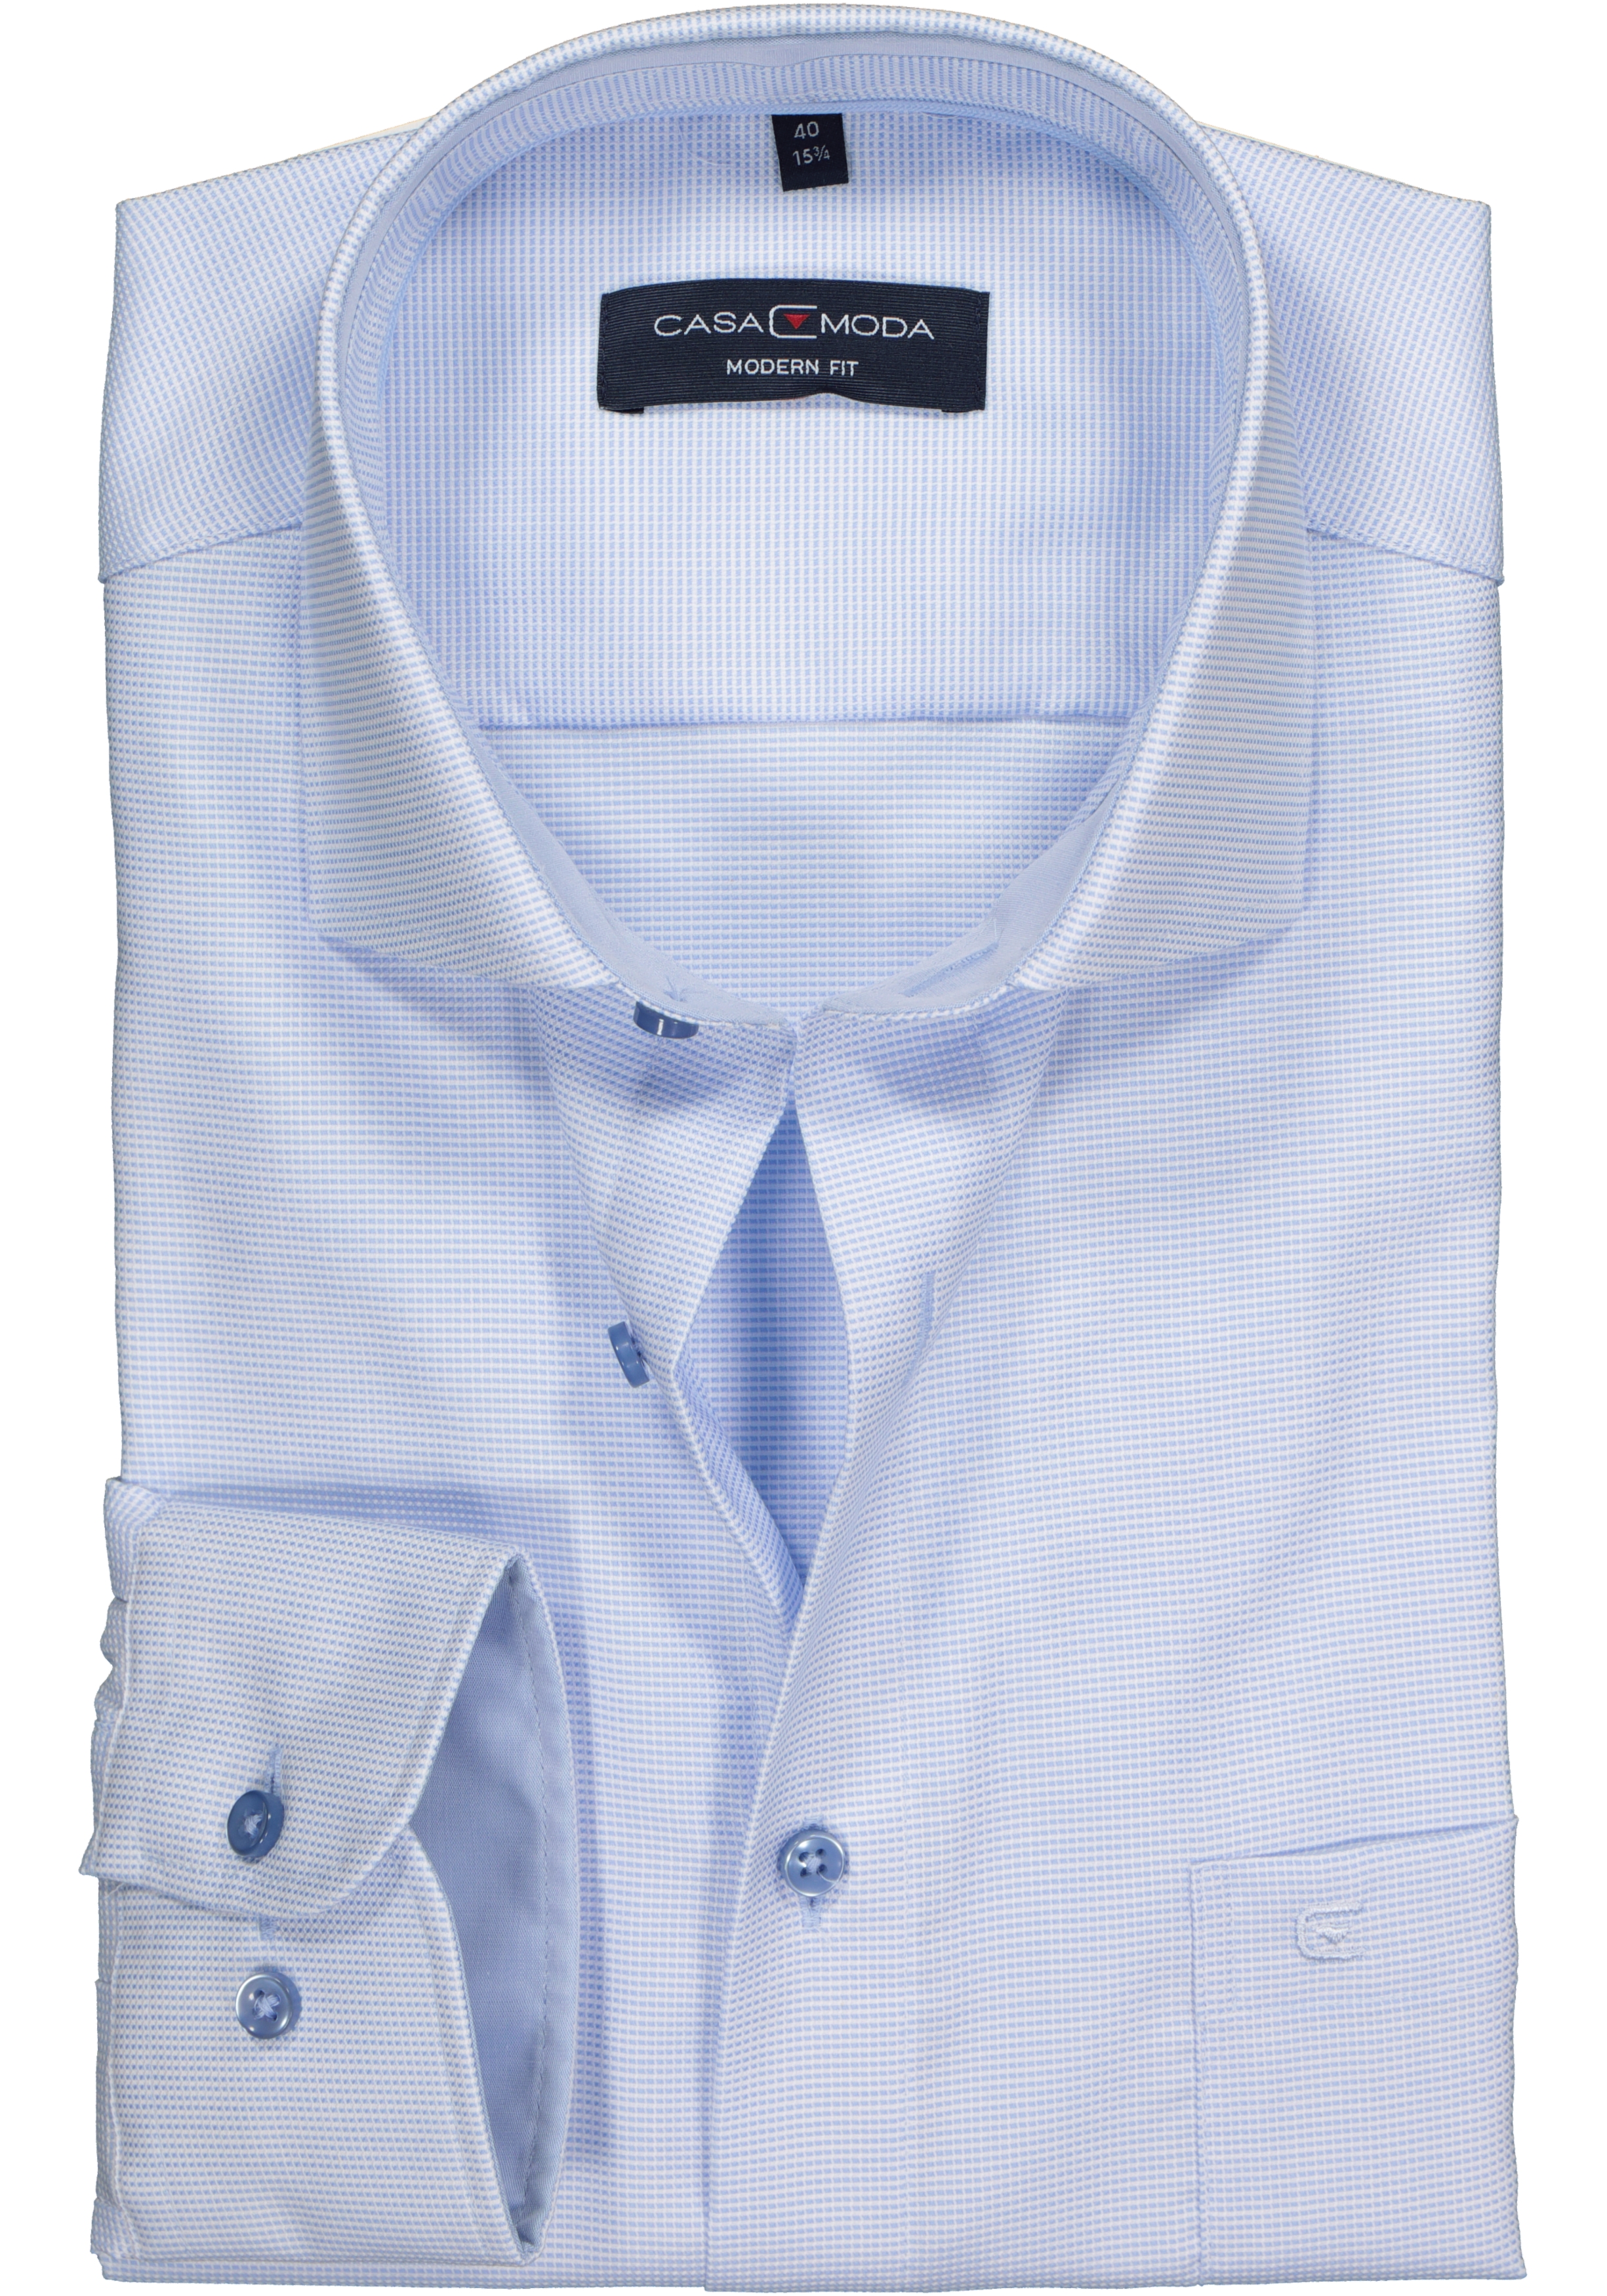 CASA MODA modern fit overhemd, lichtblauw met wit structuur (contrast)